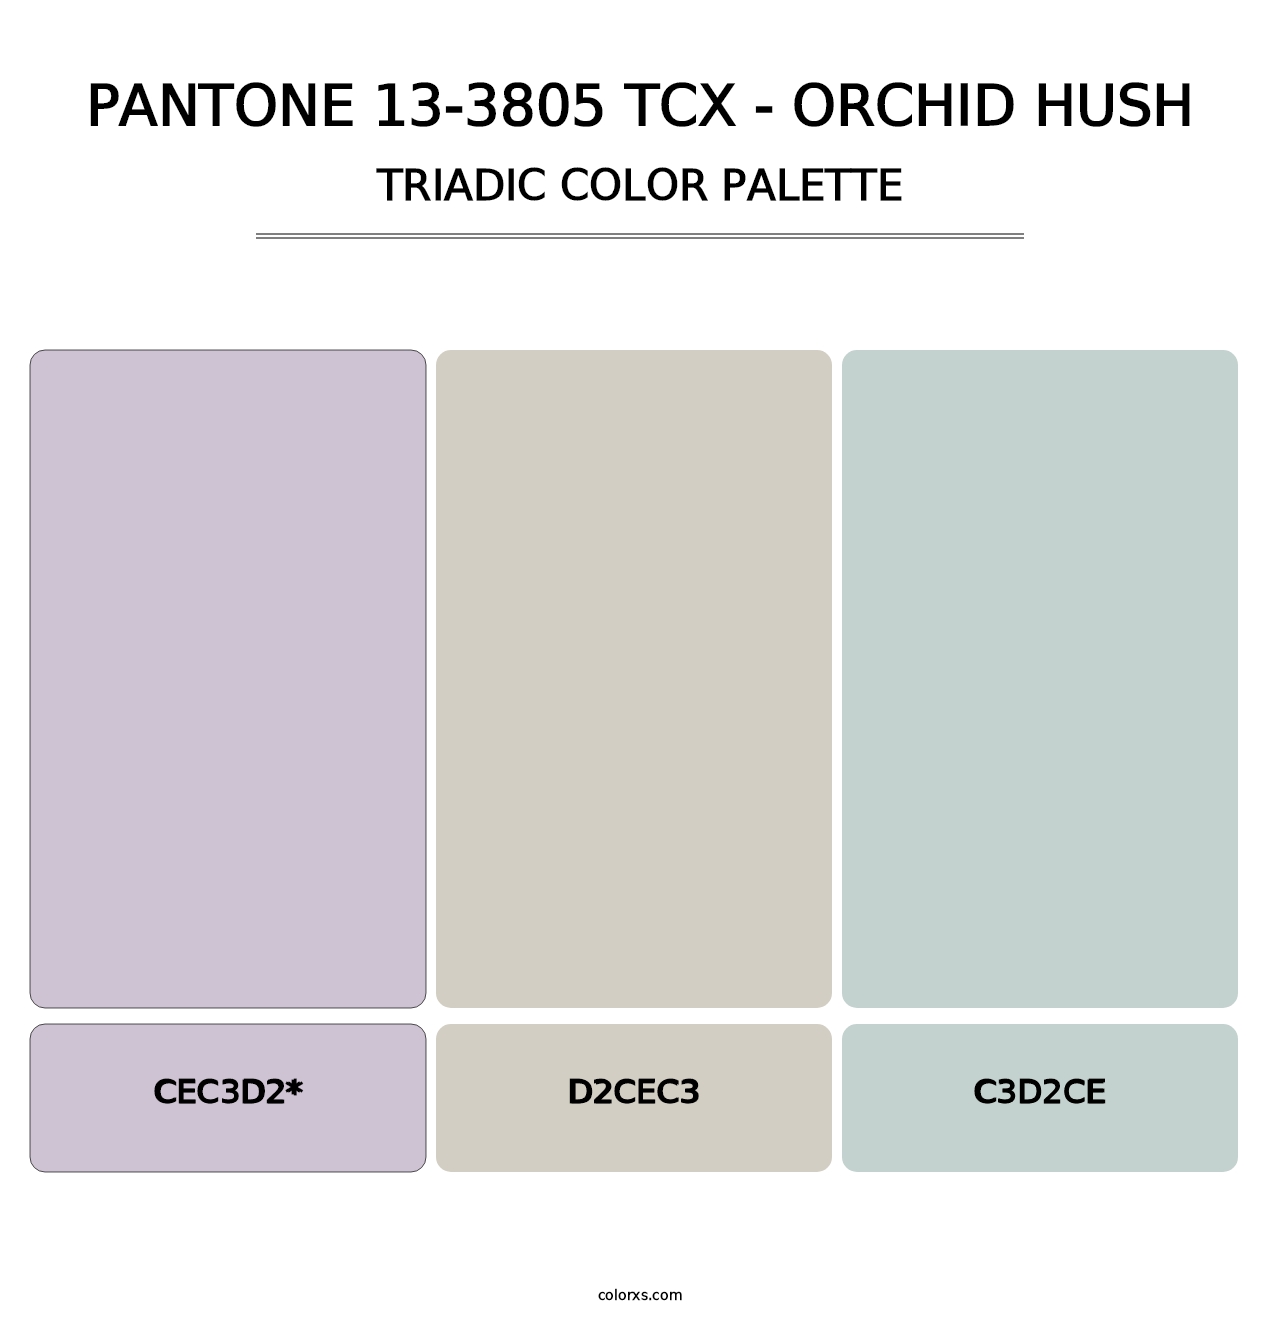 PANTONE 13-3805 TCX - Orchid Hush - Triadic Color Palette